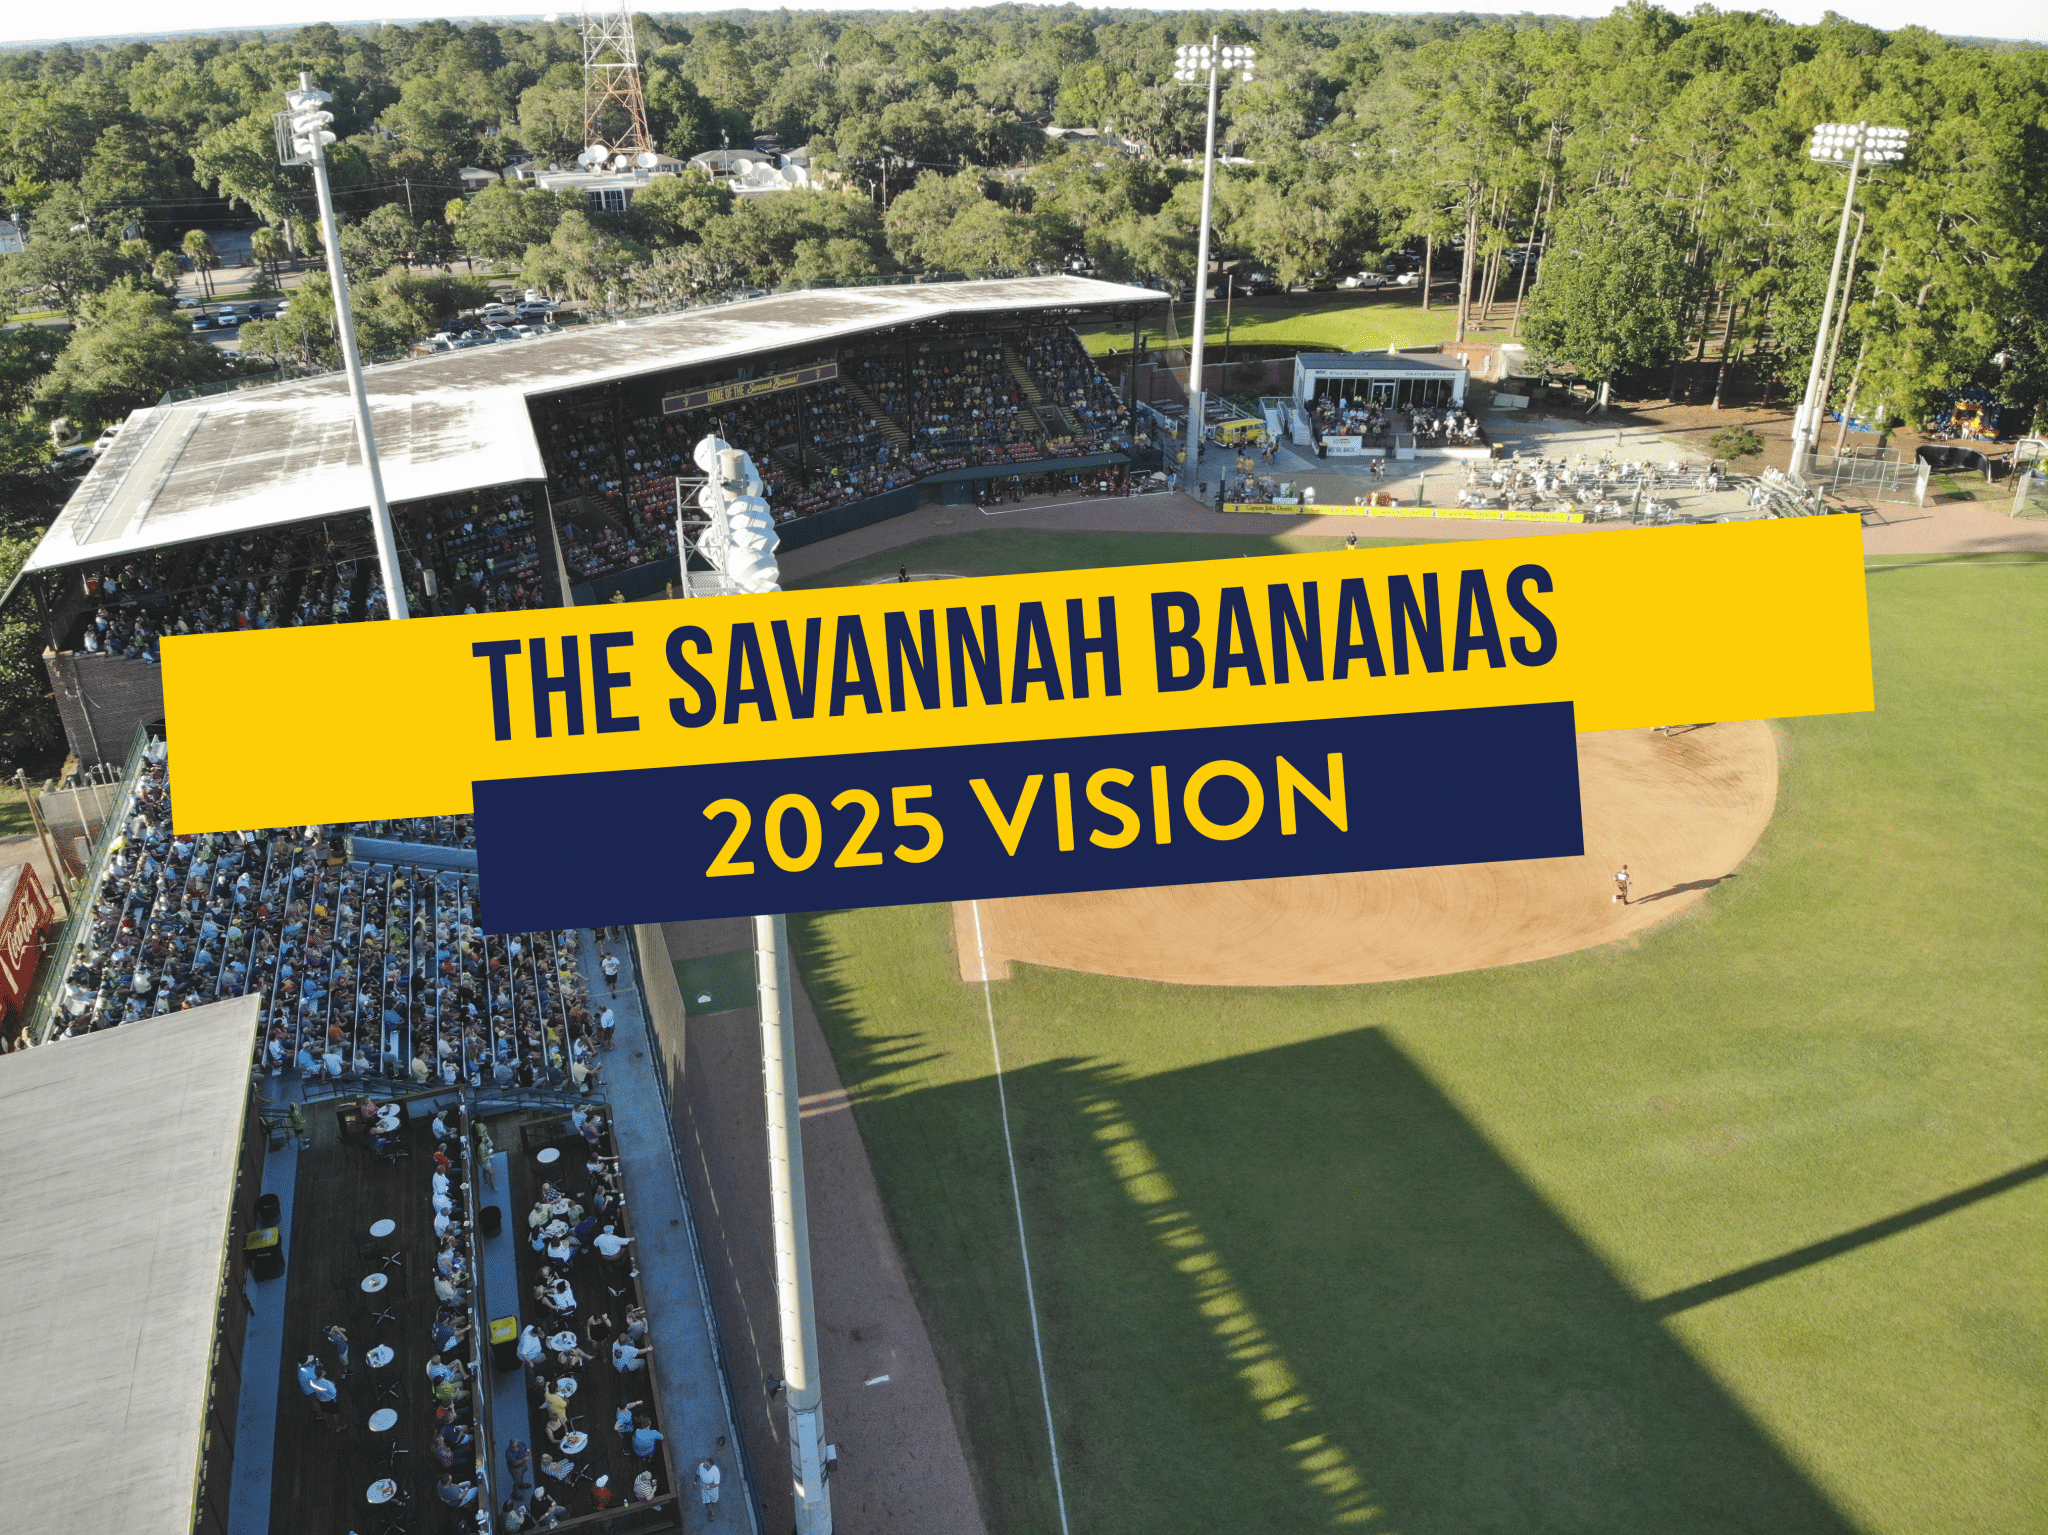 Savannah Bananas Transported to 2025 The Savannah Bananas